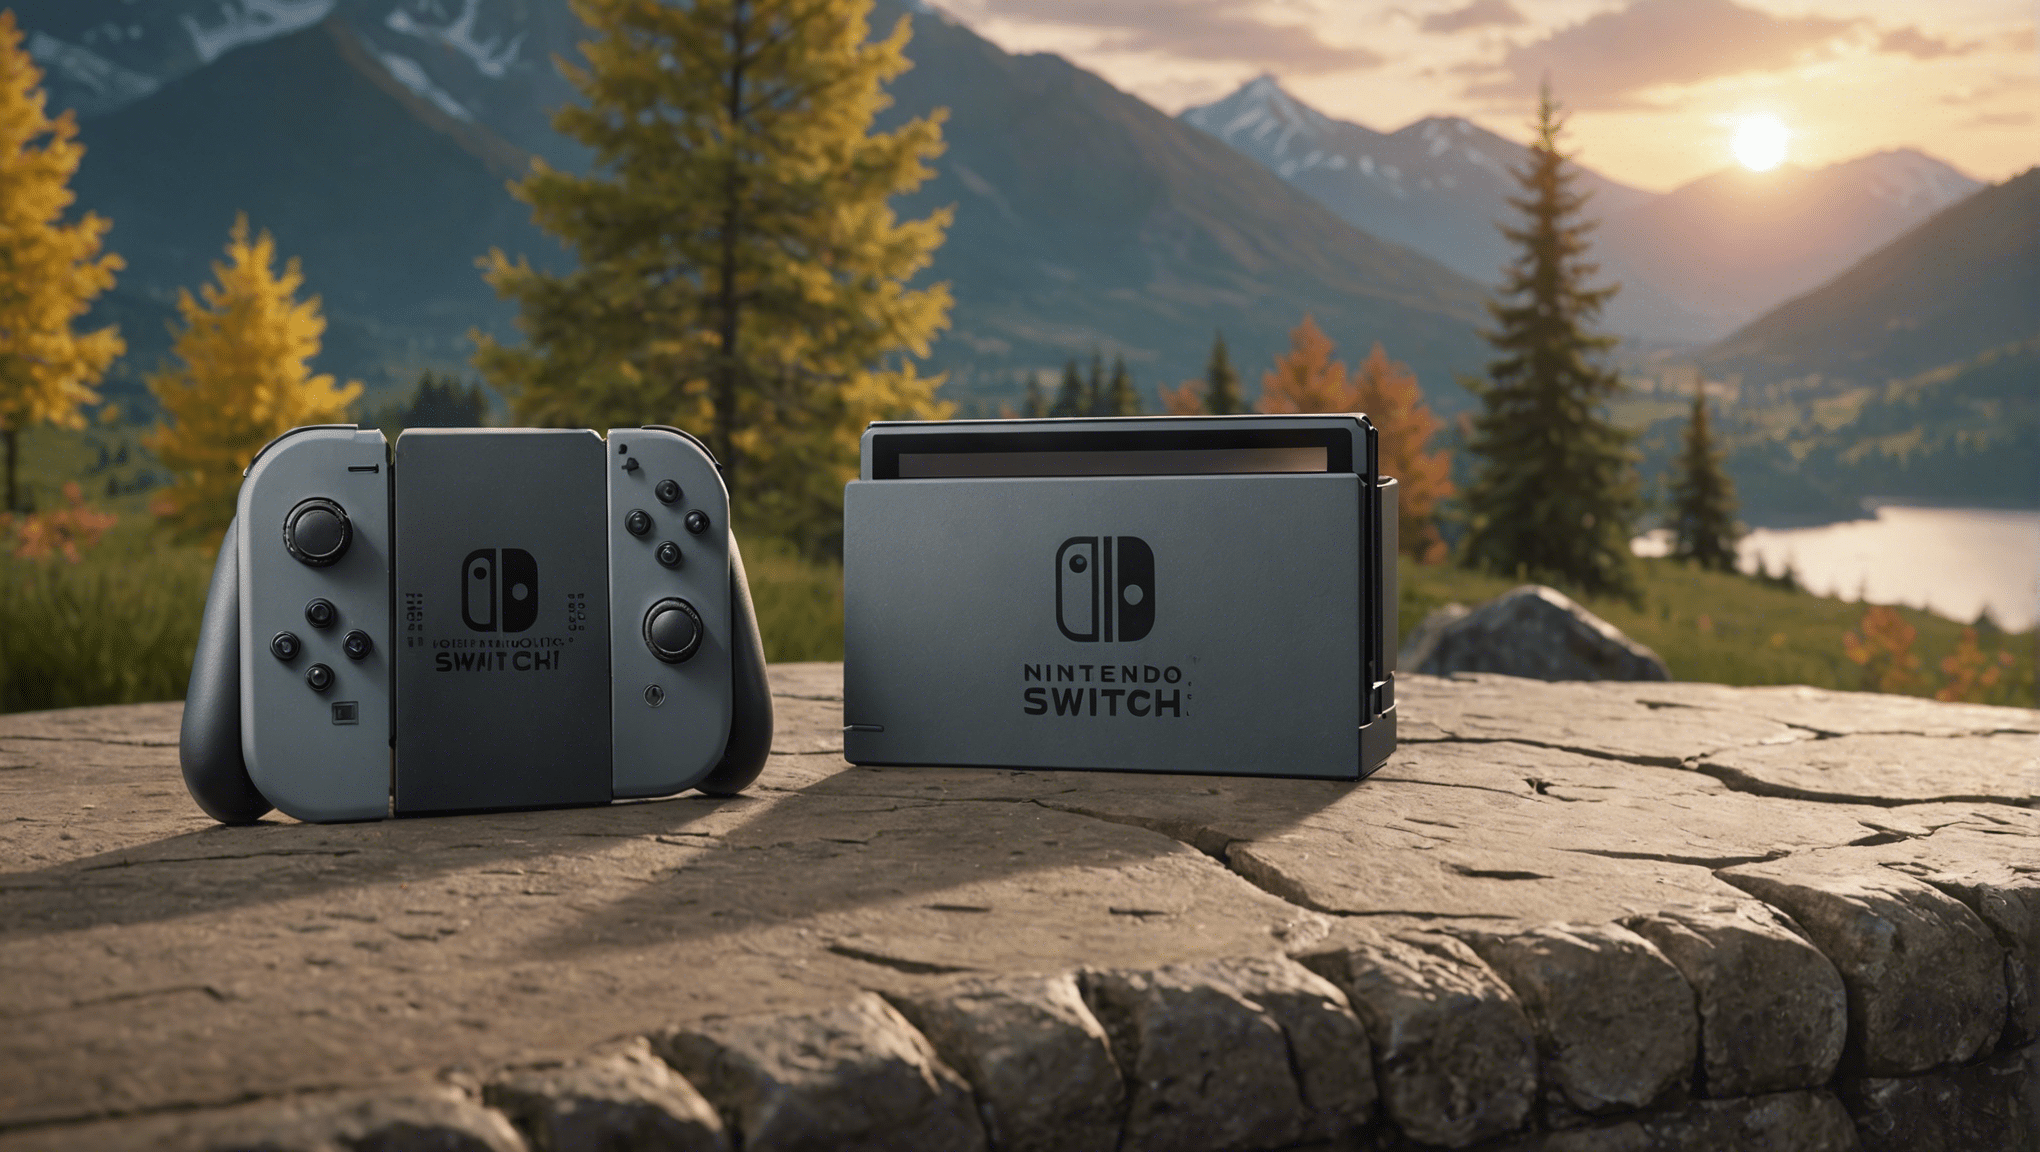 Nintendo Switch 2 の衝撃的な事実を独占的に発見してください!将来のコンソールに関するリークに隠された謎に迫ります。待望の新機能の最新情報をお見逃しなく！